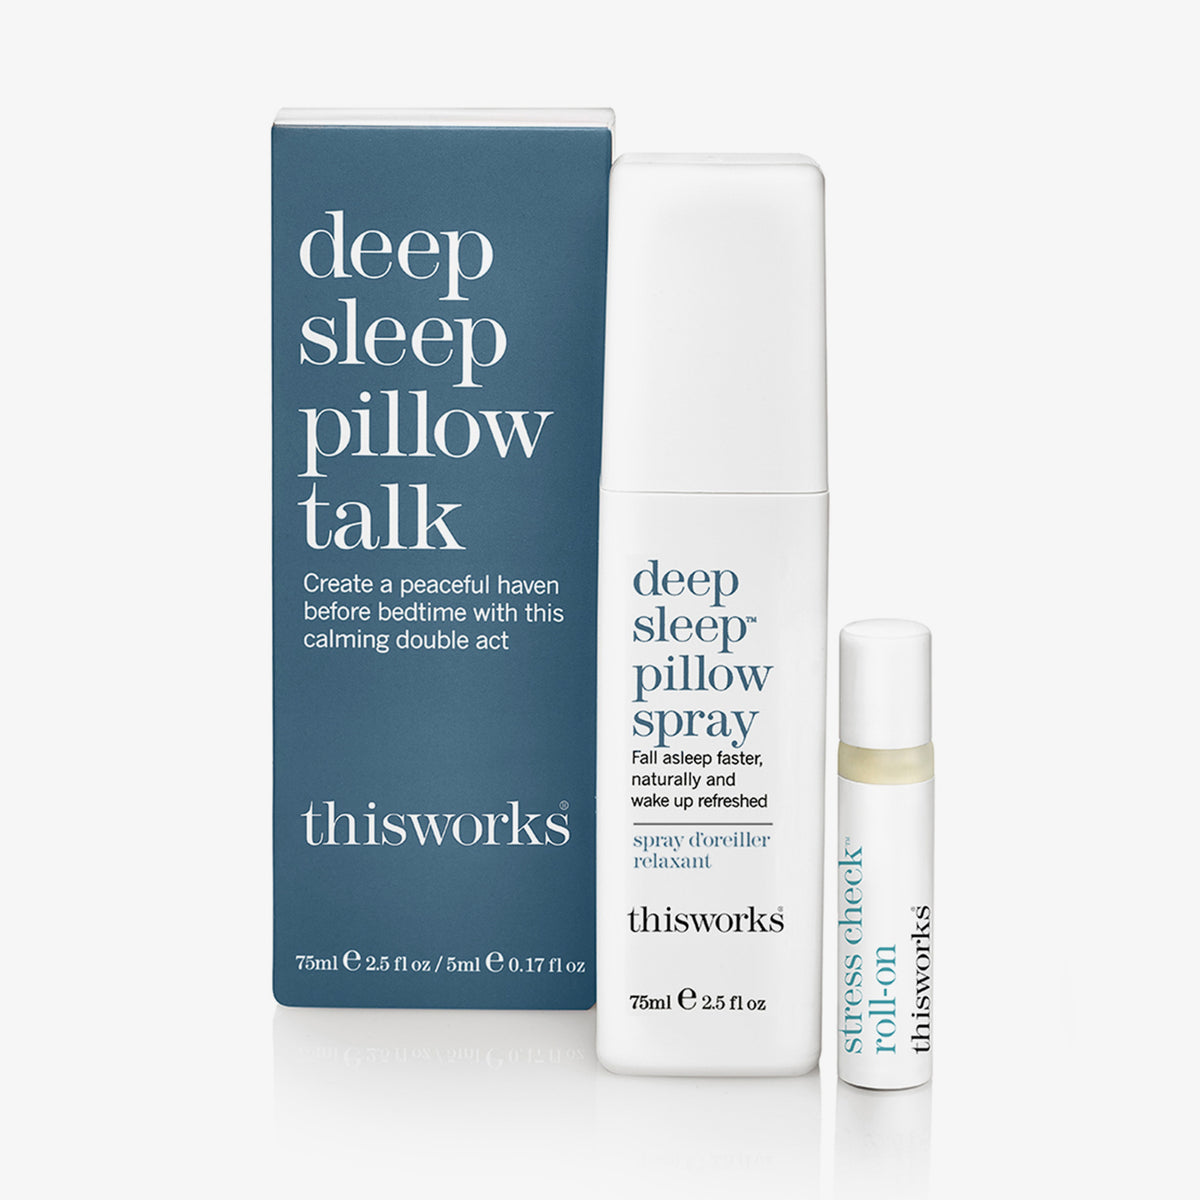 Deep Sleep Pillow Talk